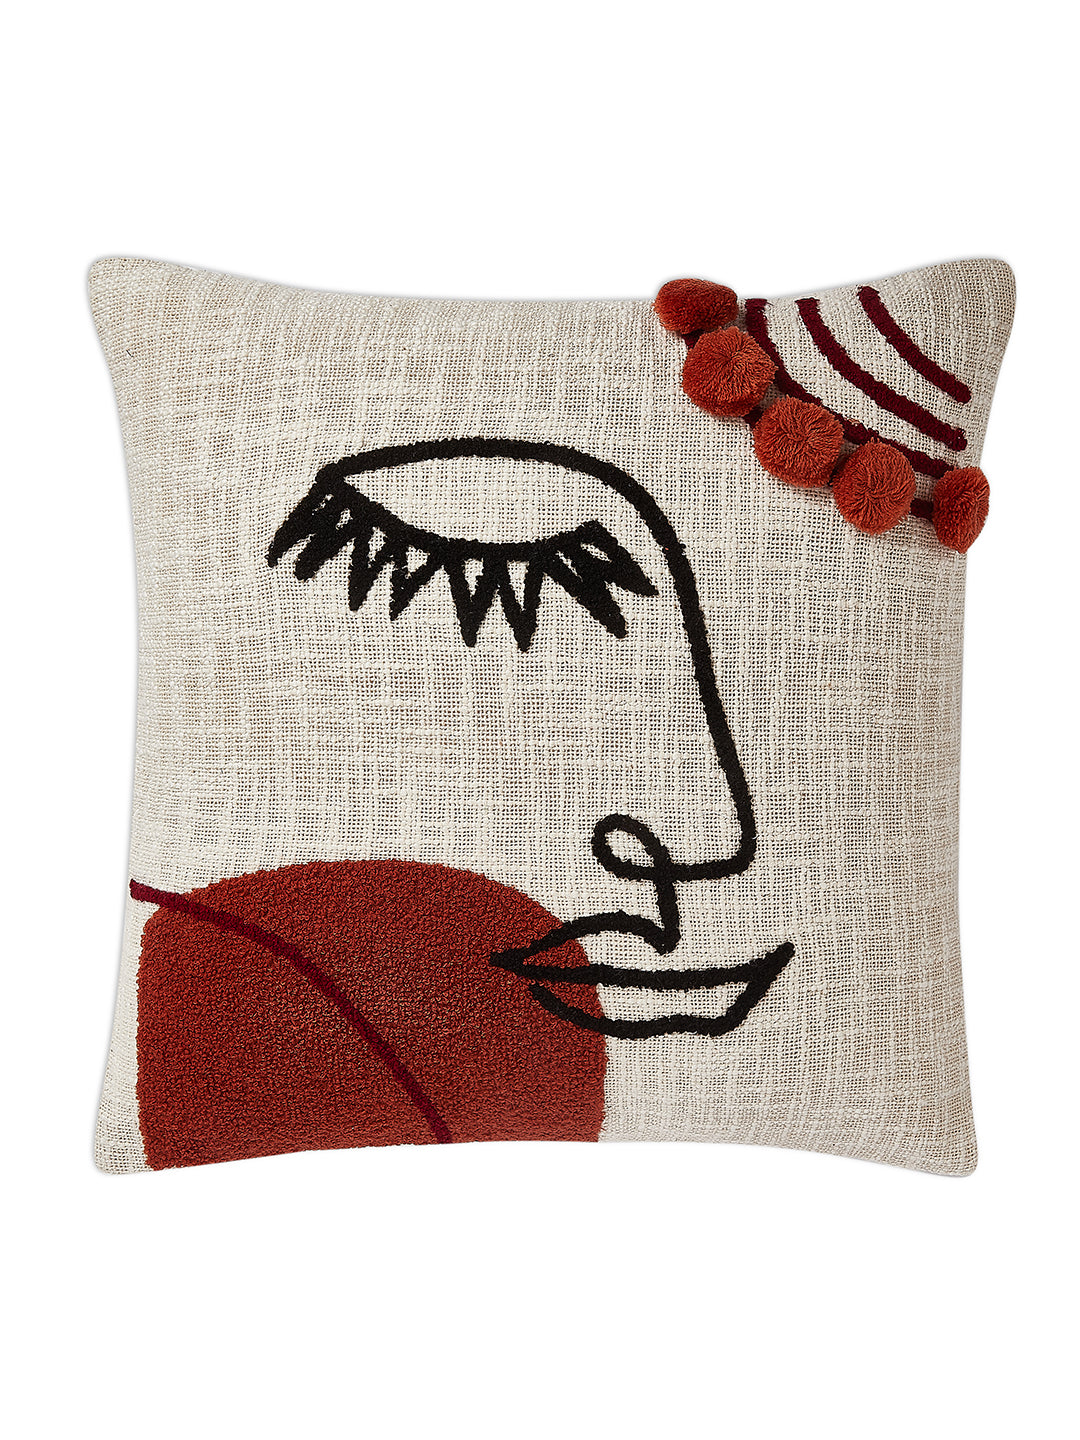 Bliss Sleep Cushion Cover - Handmade